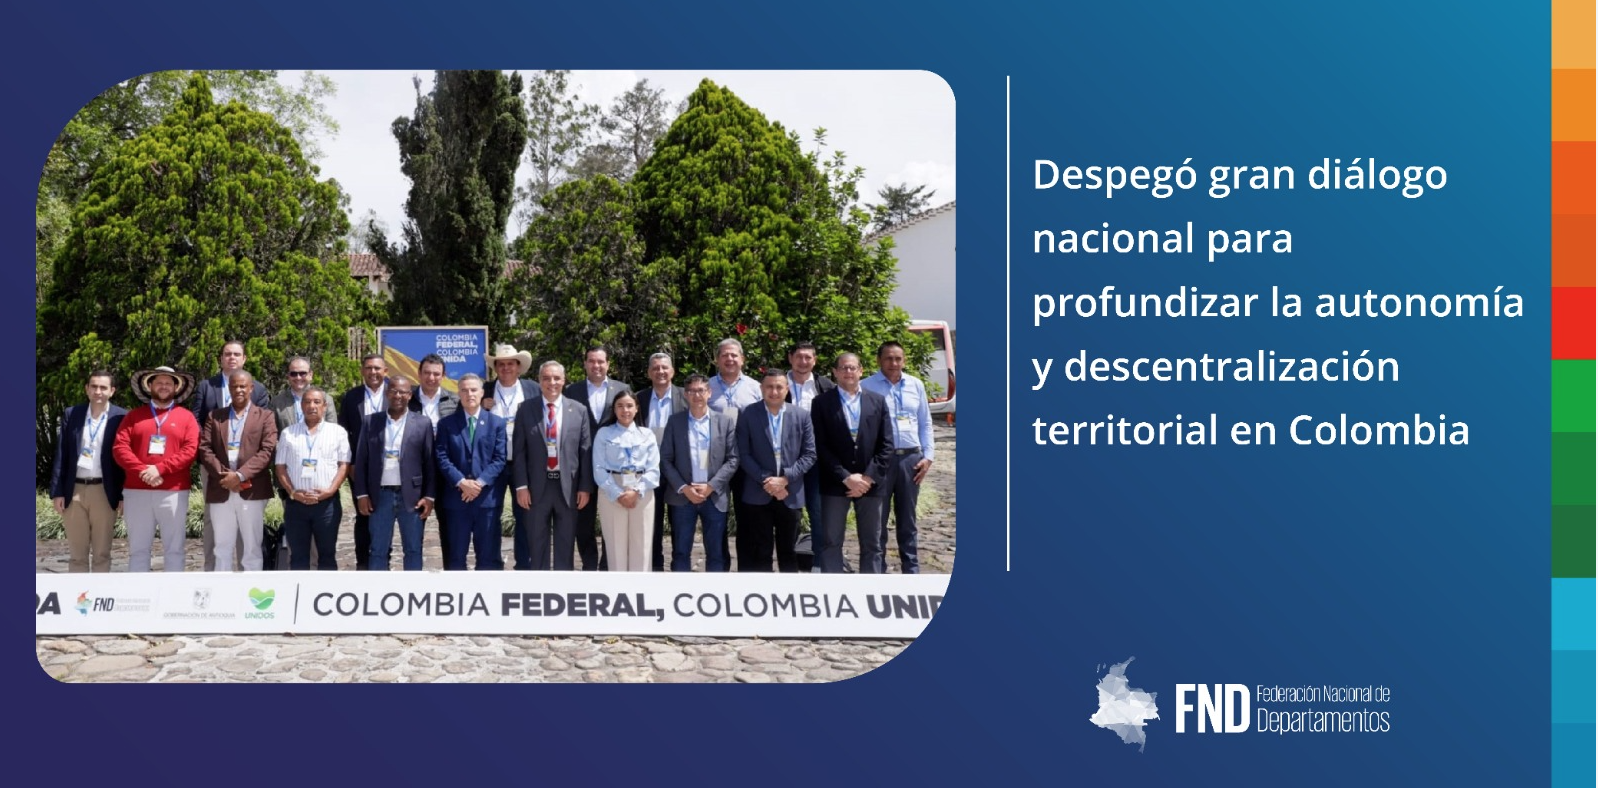 Despegó gran diálogo nacional para profundizar la autonomía y descentralización territorial en Colombia